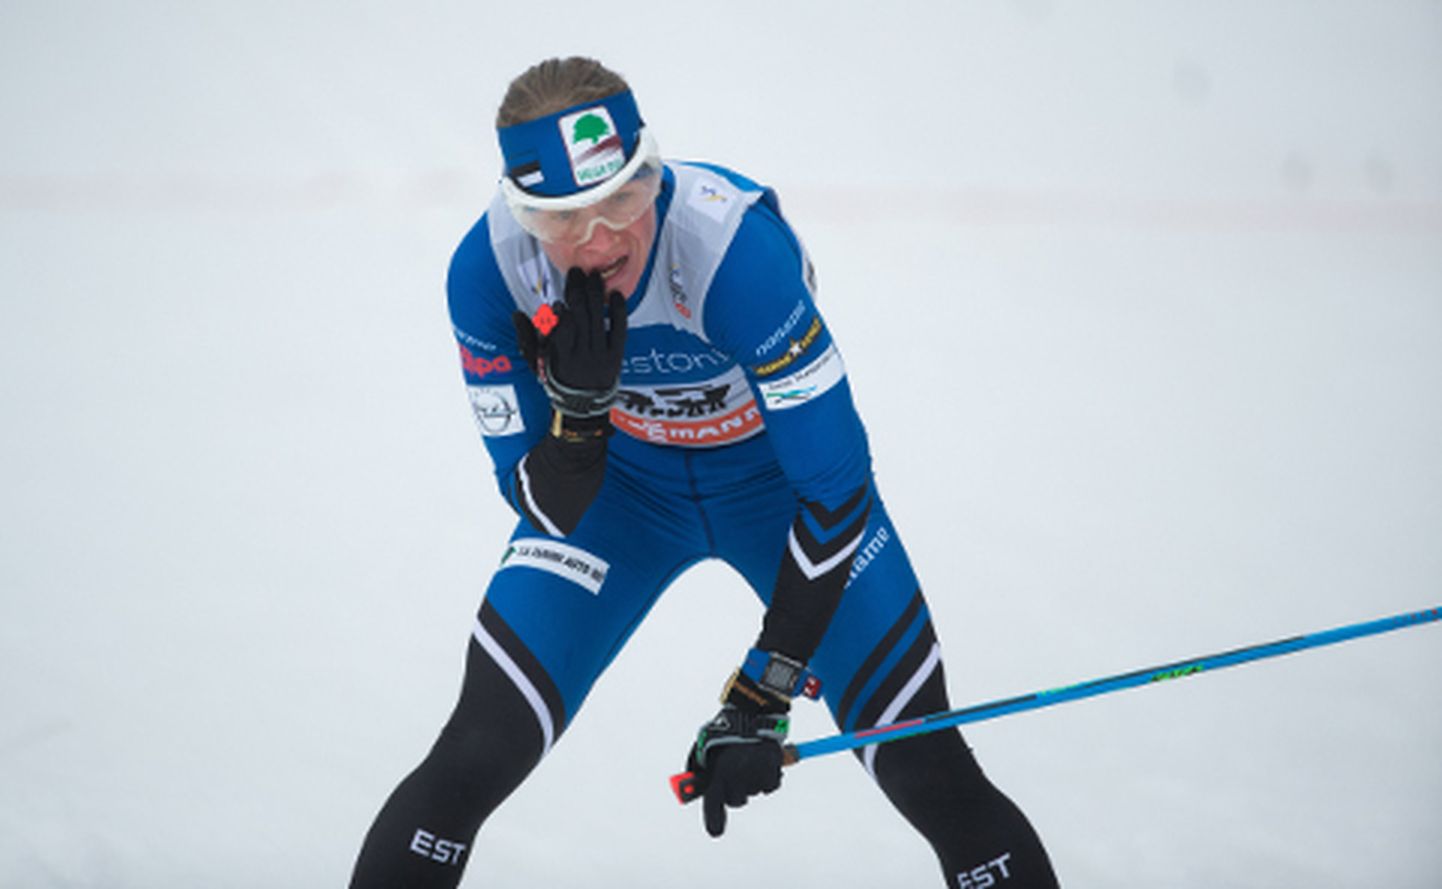 Eesti meistrivõistlustel võitis Tatjana Mannima lõppenud talvel kaks kulda, rahvusvahelises konkurentsis oli säravaim saavutus 2. koht Tartu maratonil.